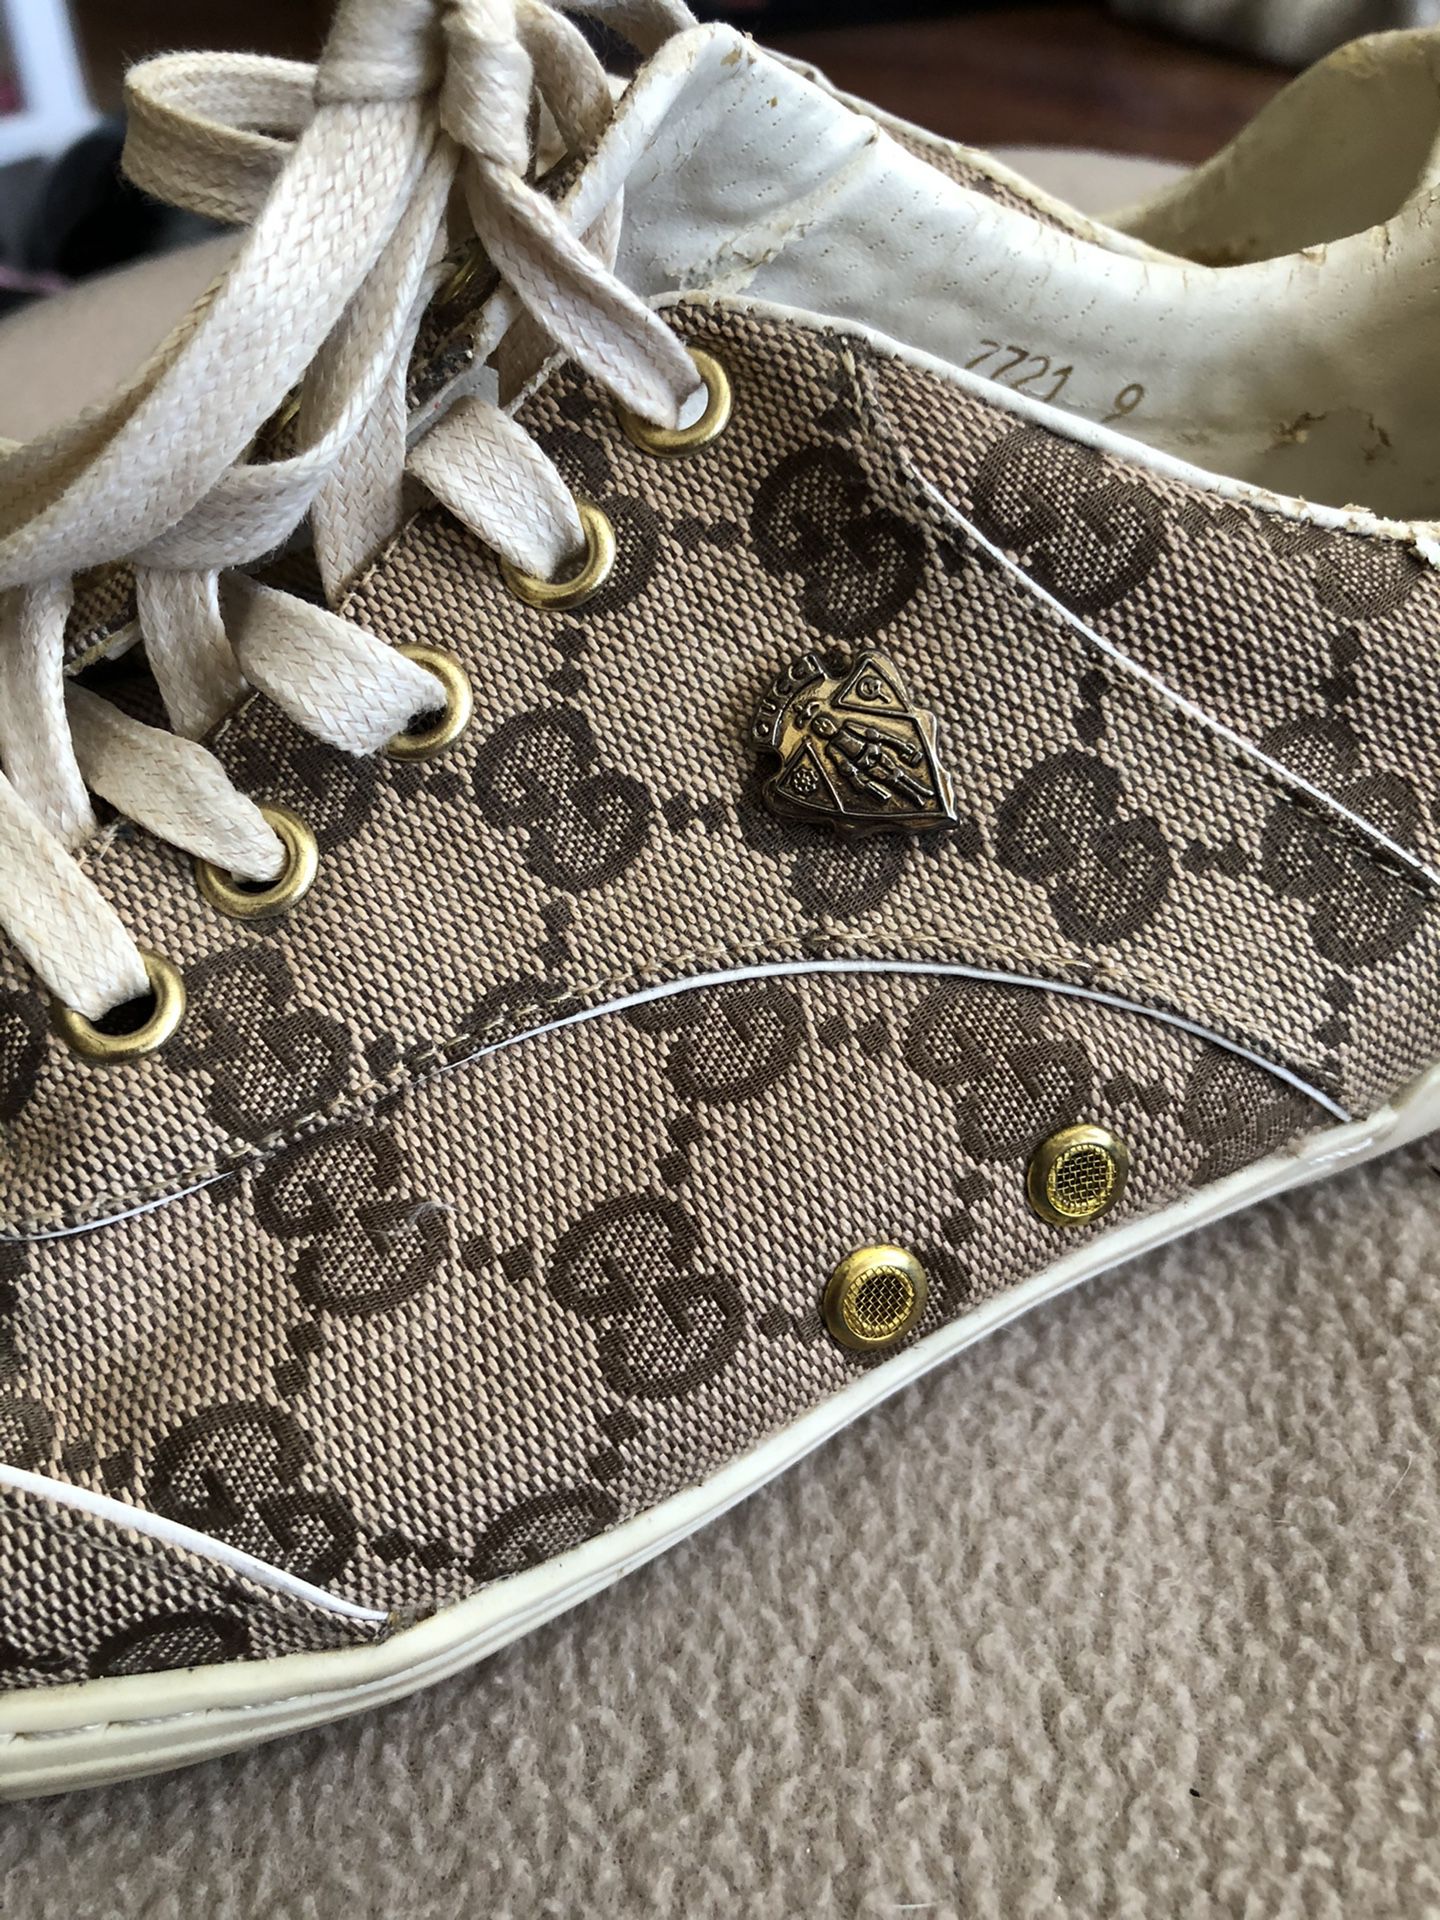 Ladies size 9 Gucci tennis shoes